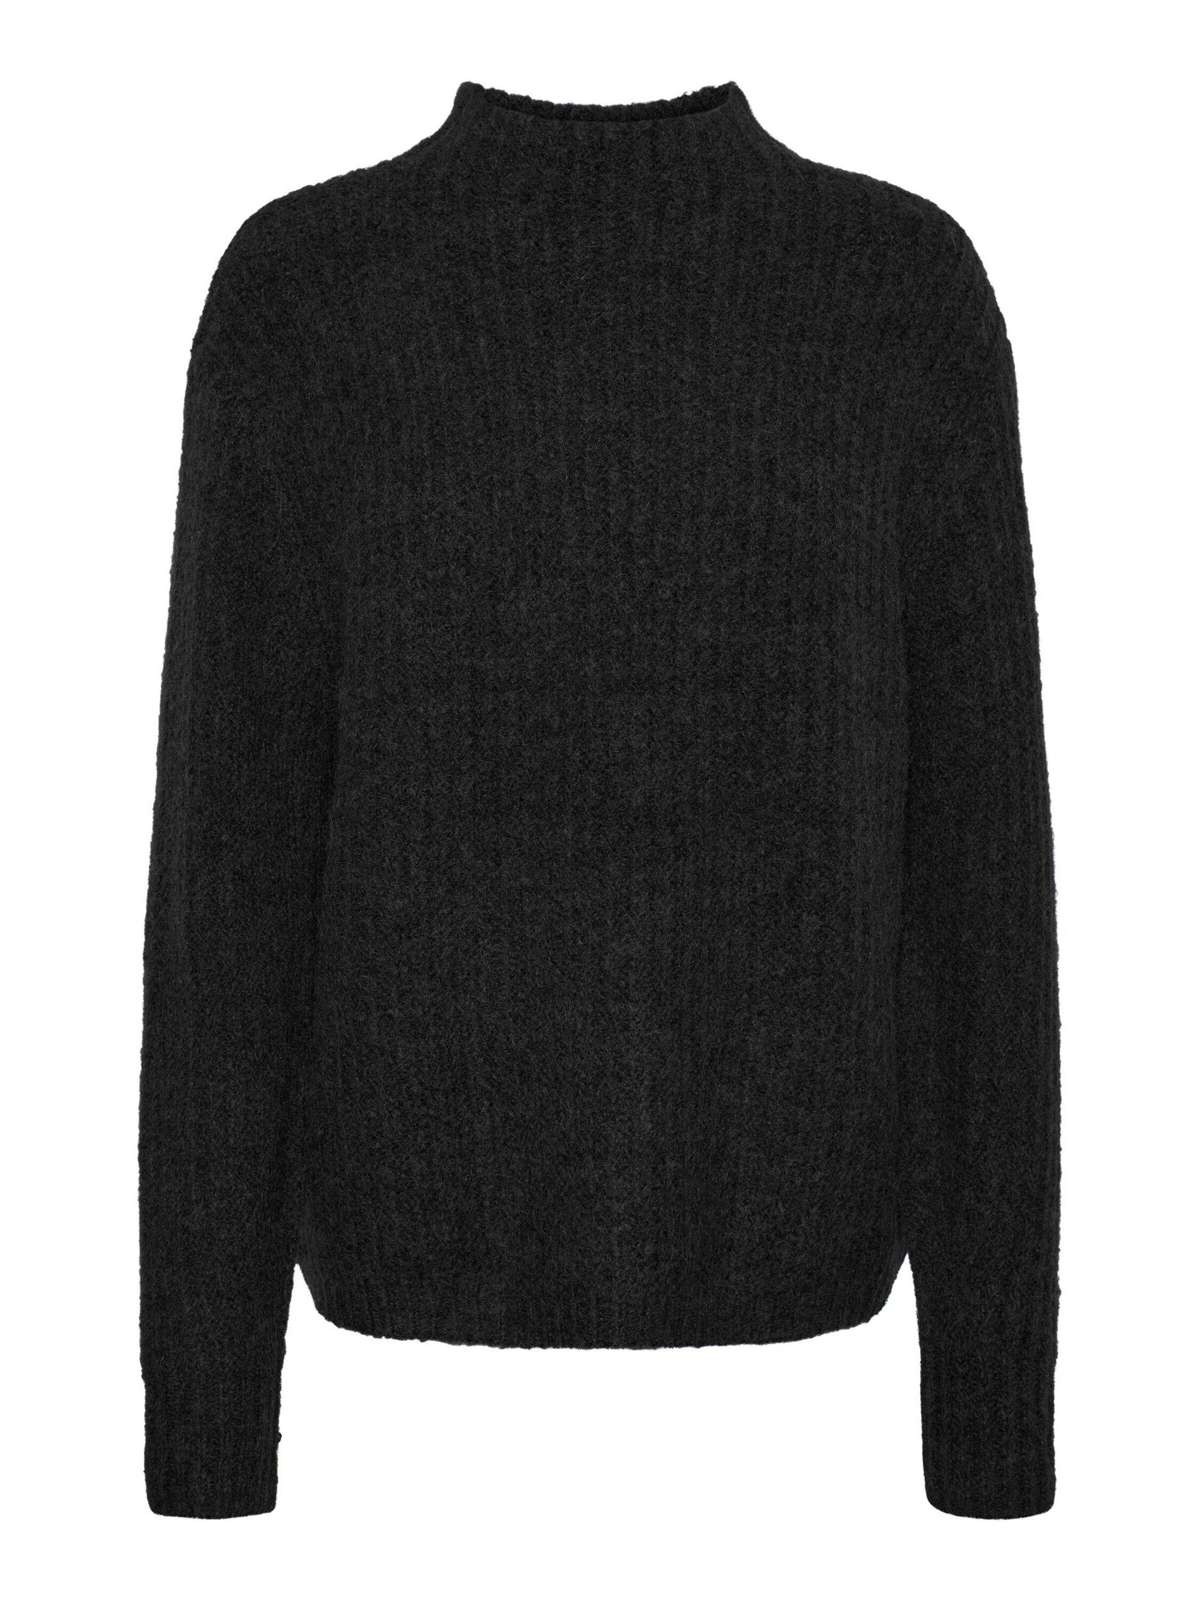 Вязаный свитер Ромашка (1 шт.) Подробнее